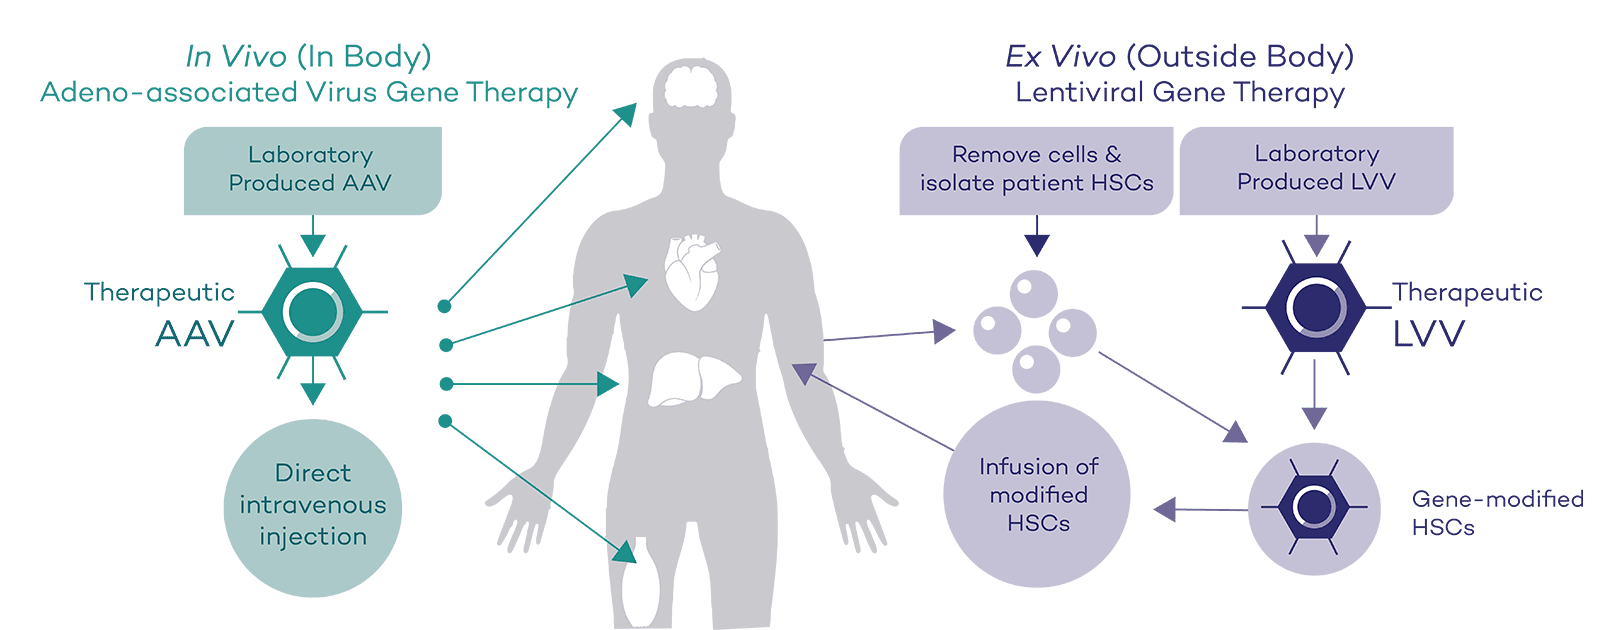 In vivo and Ex vivo diagram